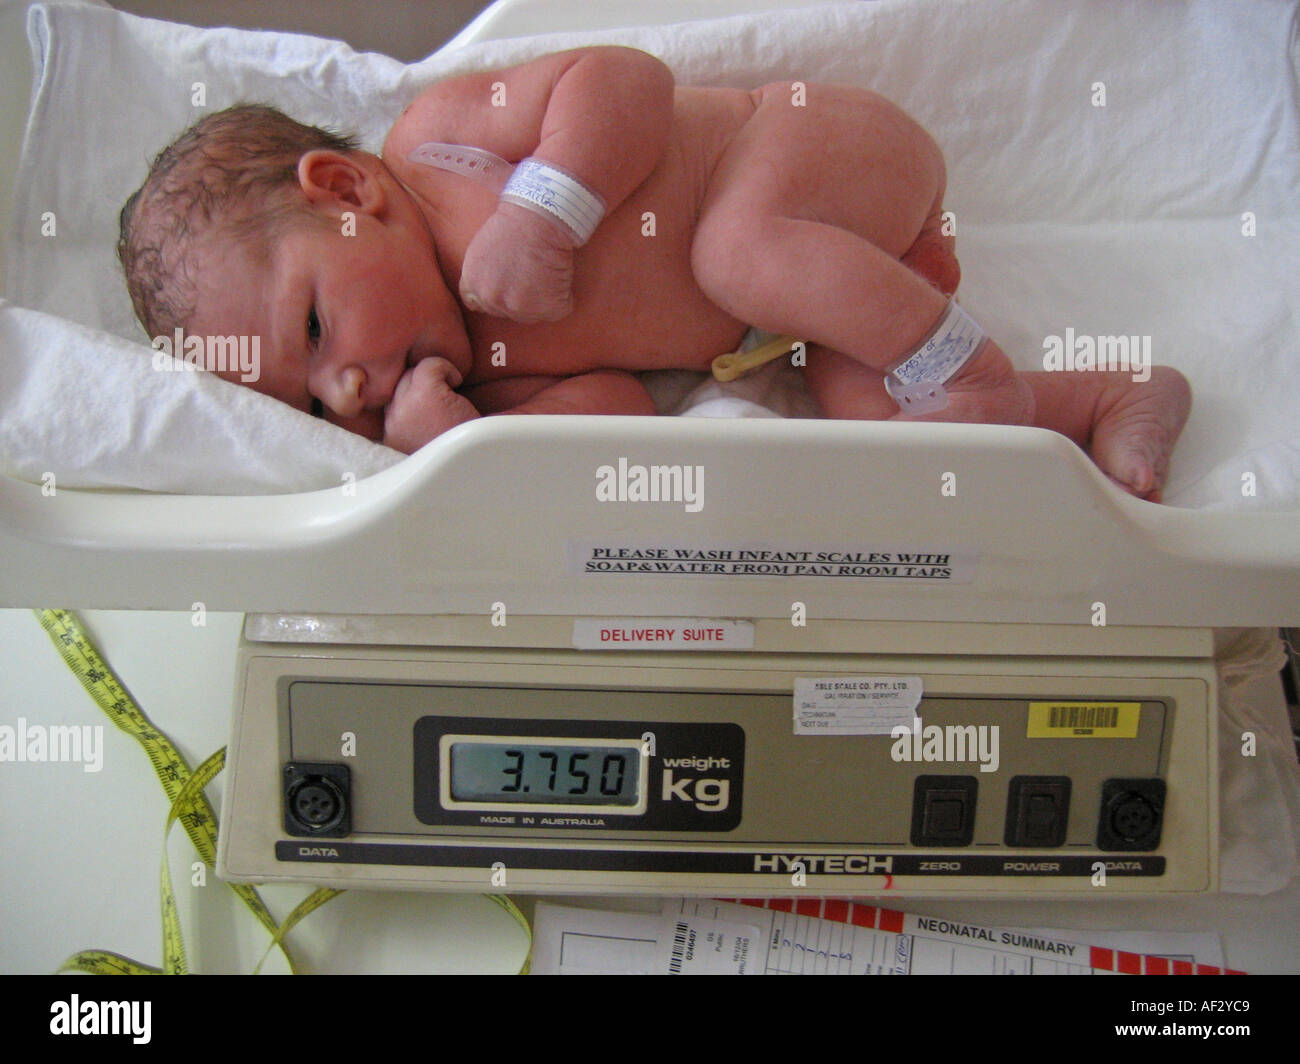 https://c8.alamy.com/comp/AF2YC9/baby-boy-birth-weight-on-hospital-scales-AF2YC9.jpg